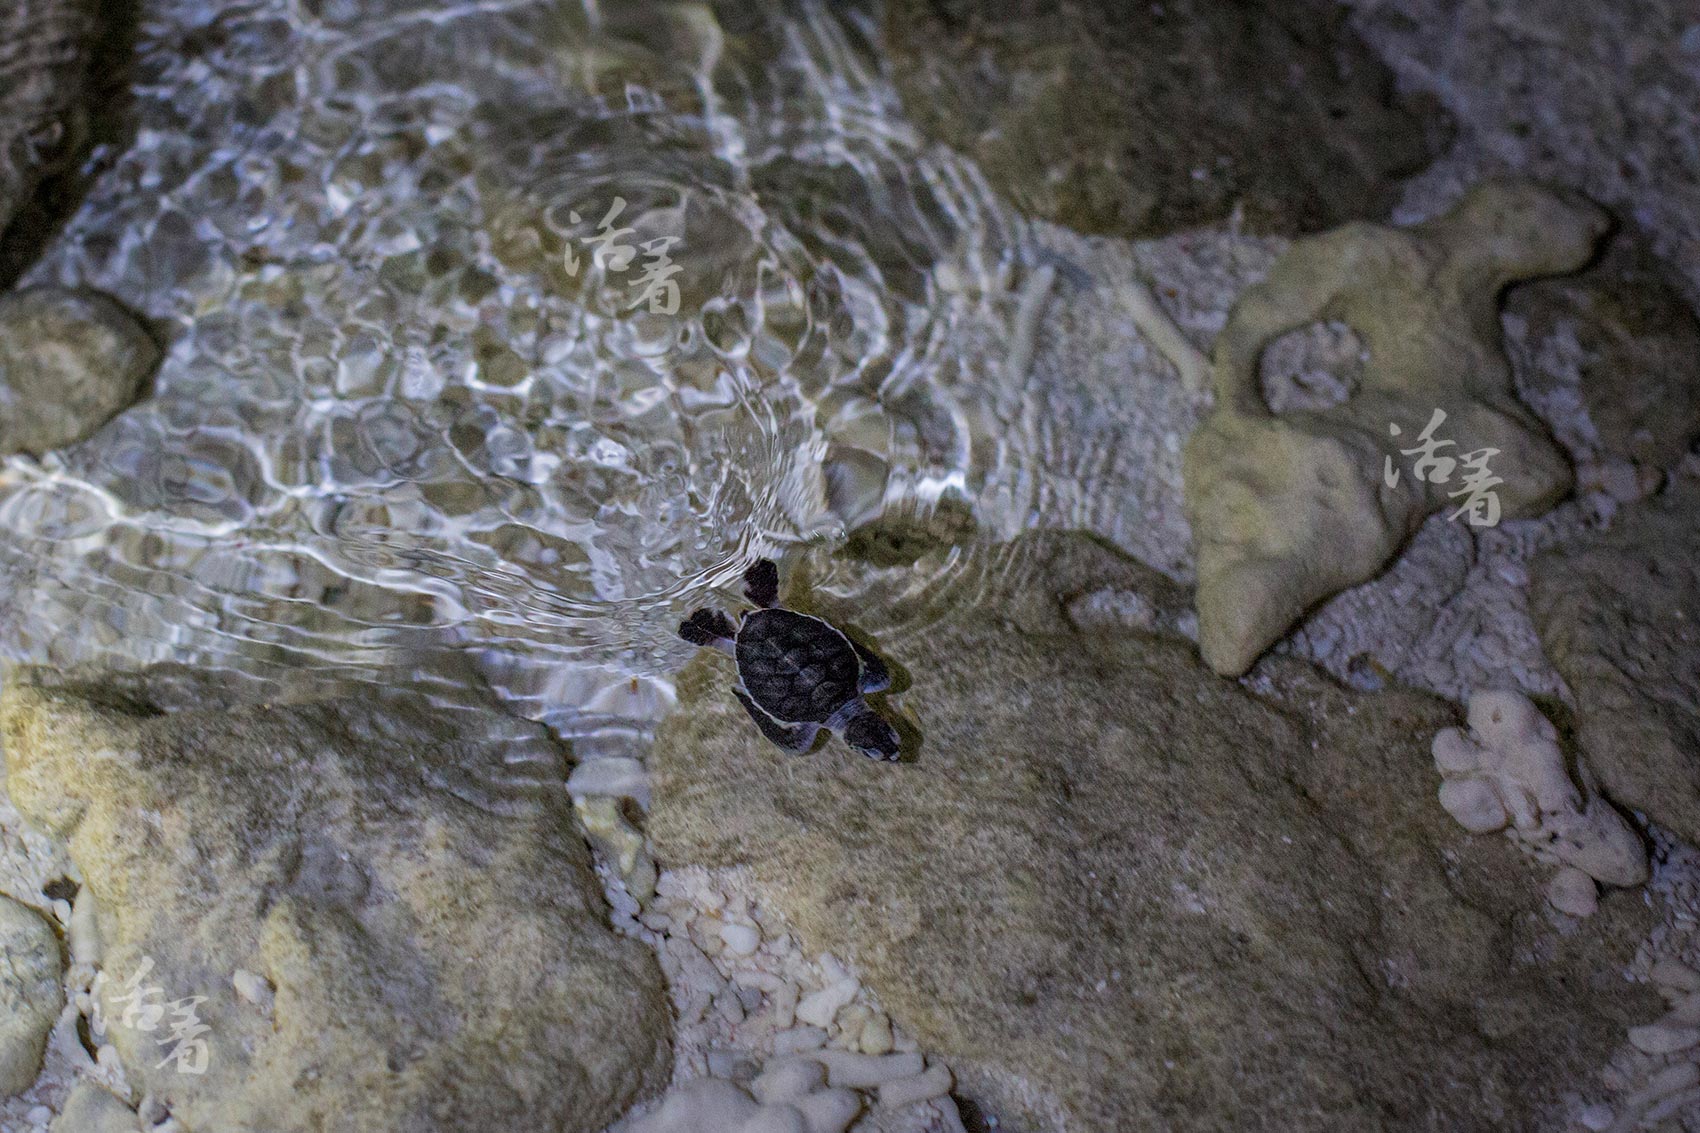 一边大海龟产卵 一边小海龟破壳 守护祖宗那片蓝